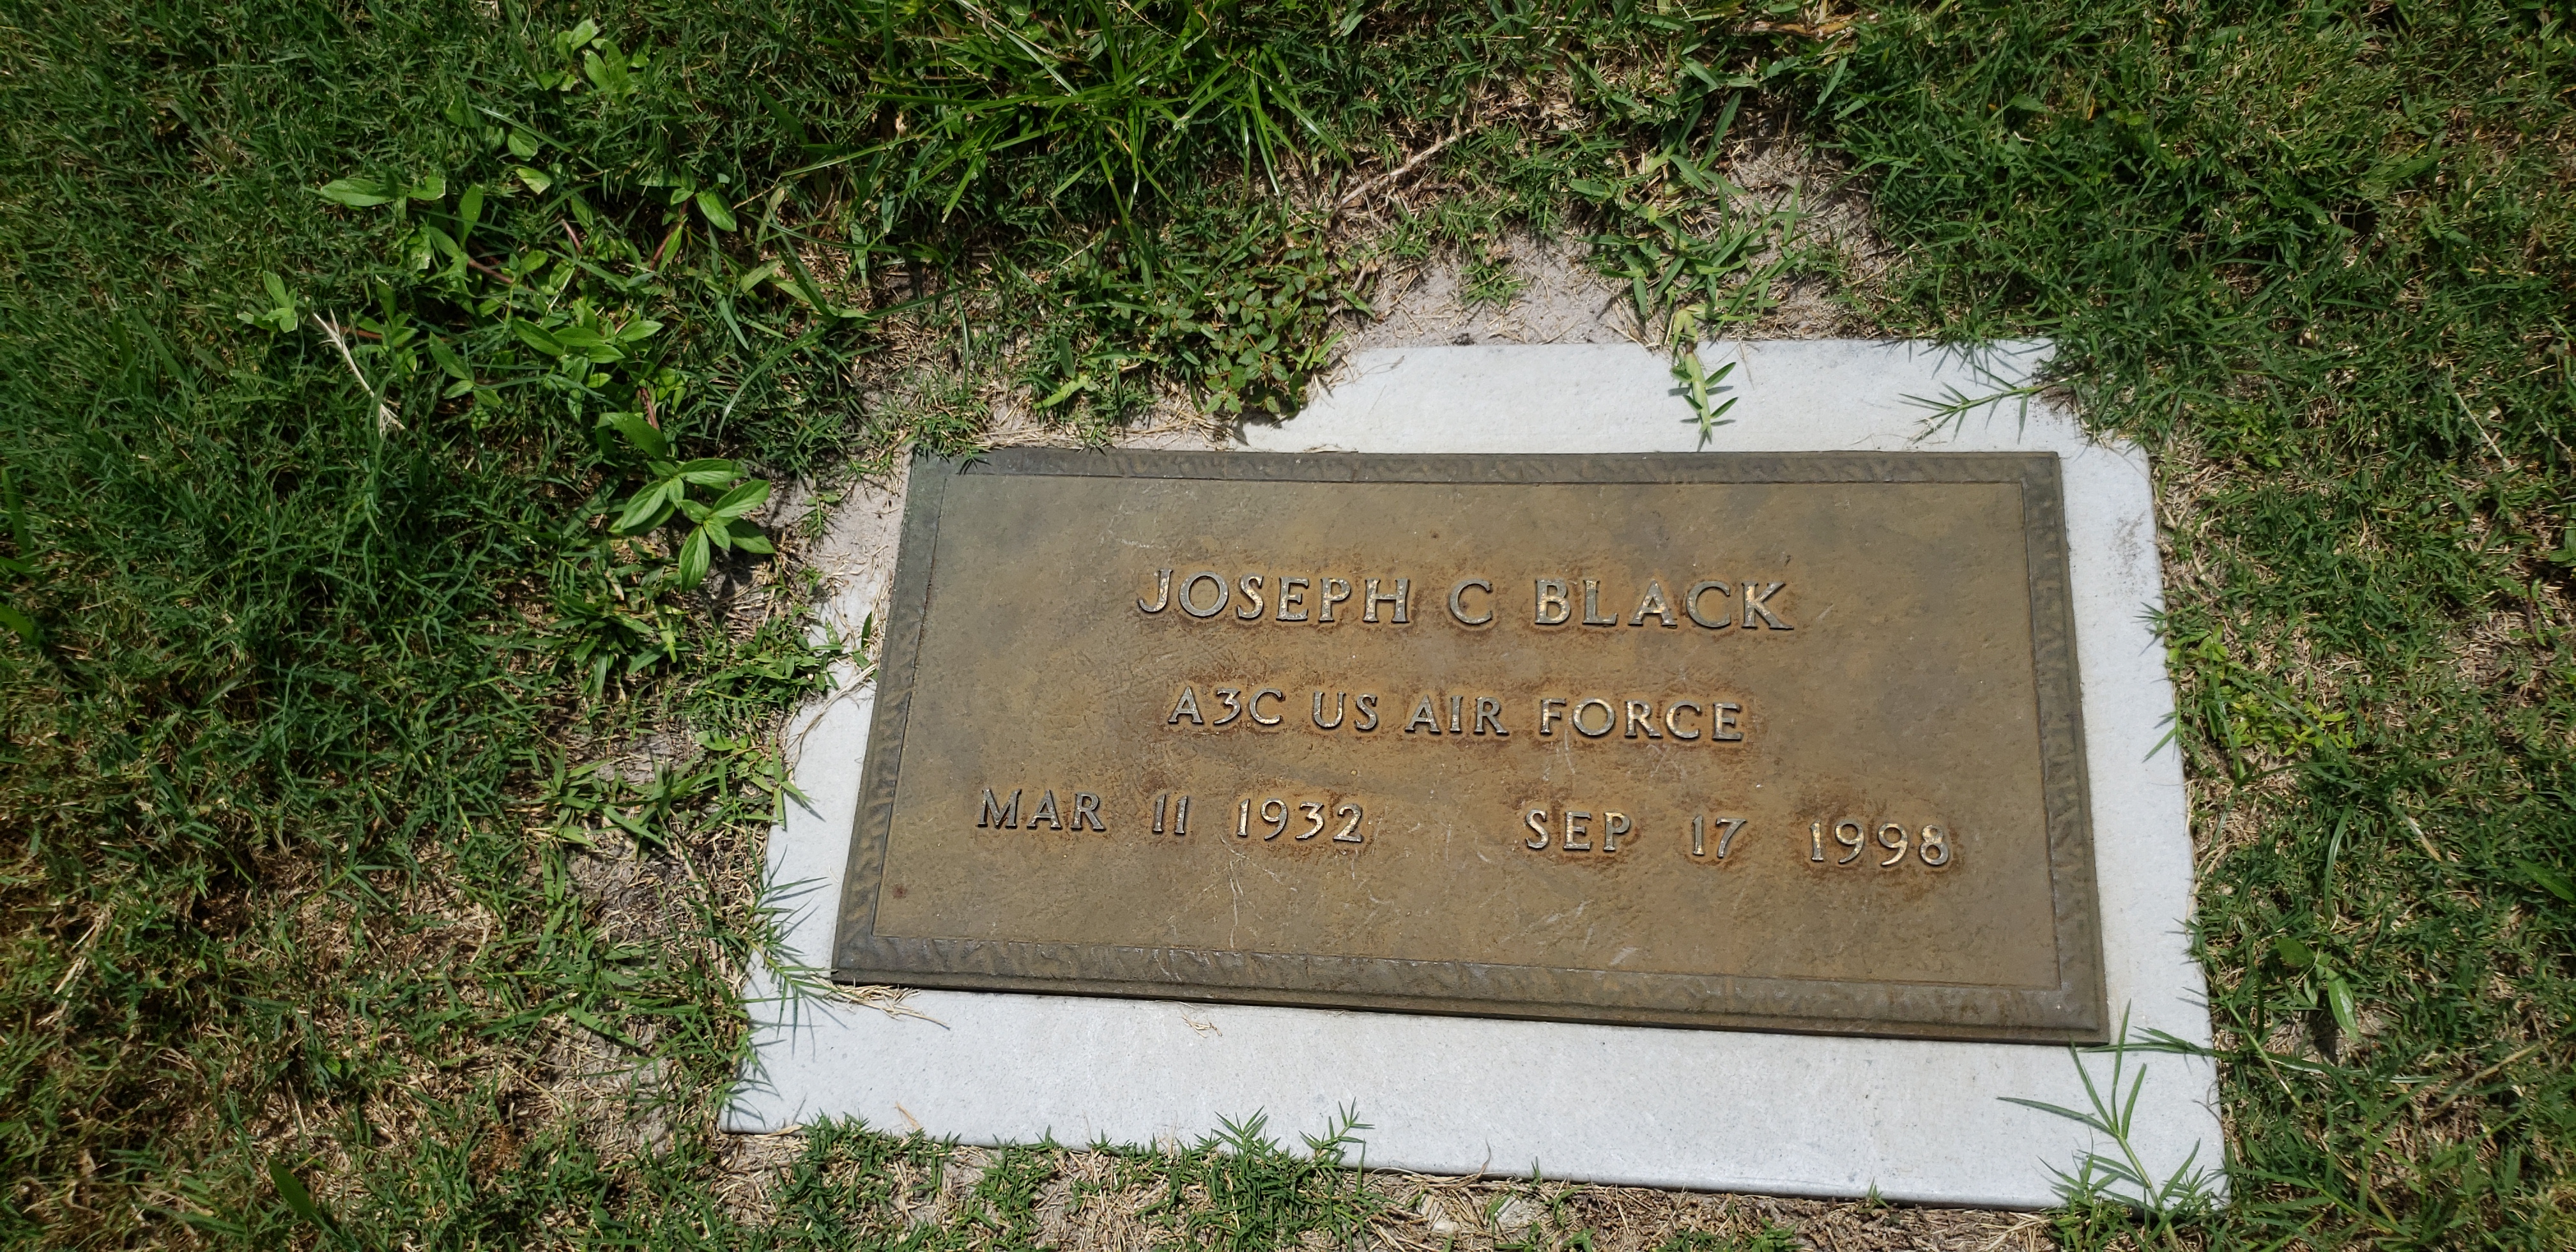 Joseph C Black